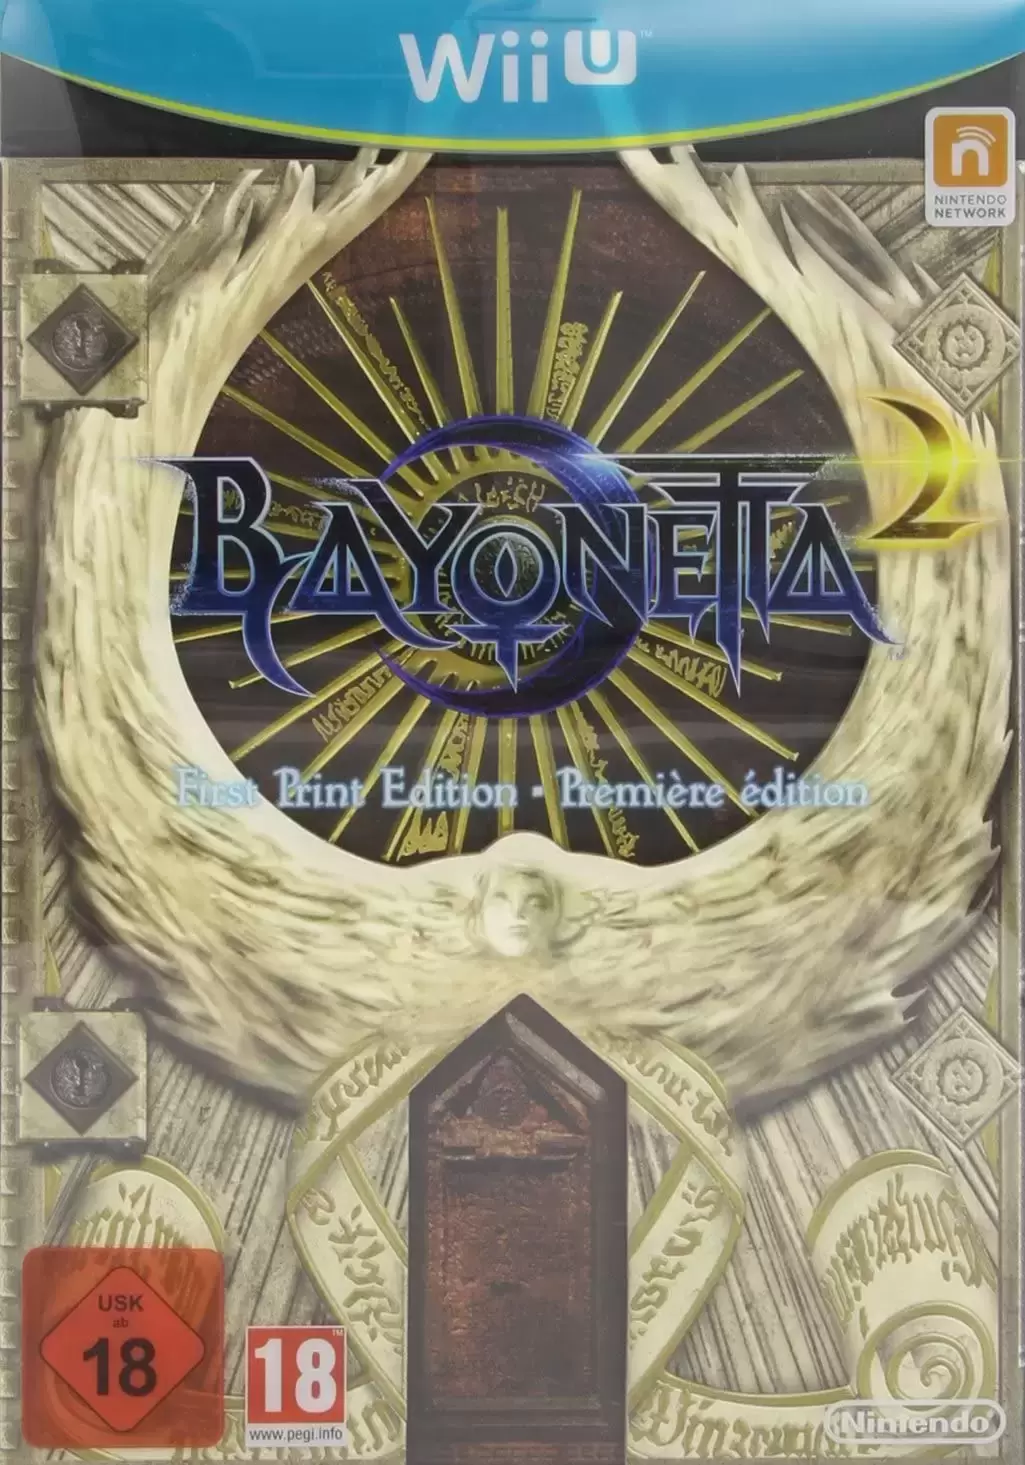 Wii U Games - Bayonetta + Bayonetta 2 - First Edition